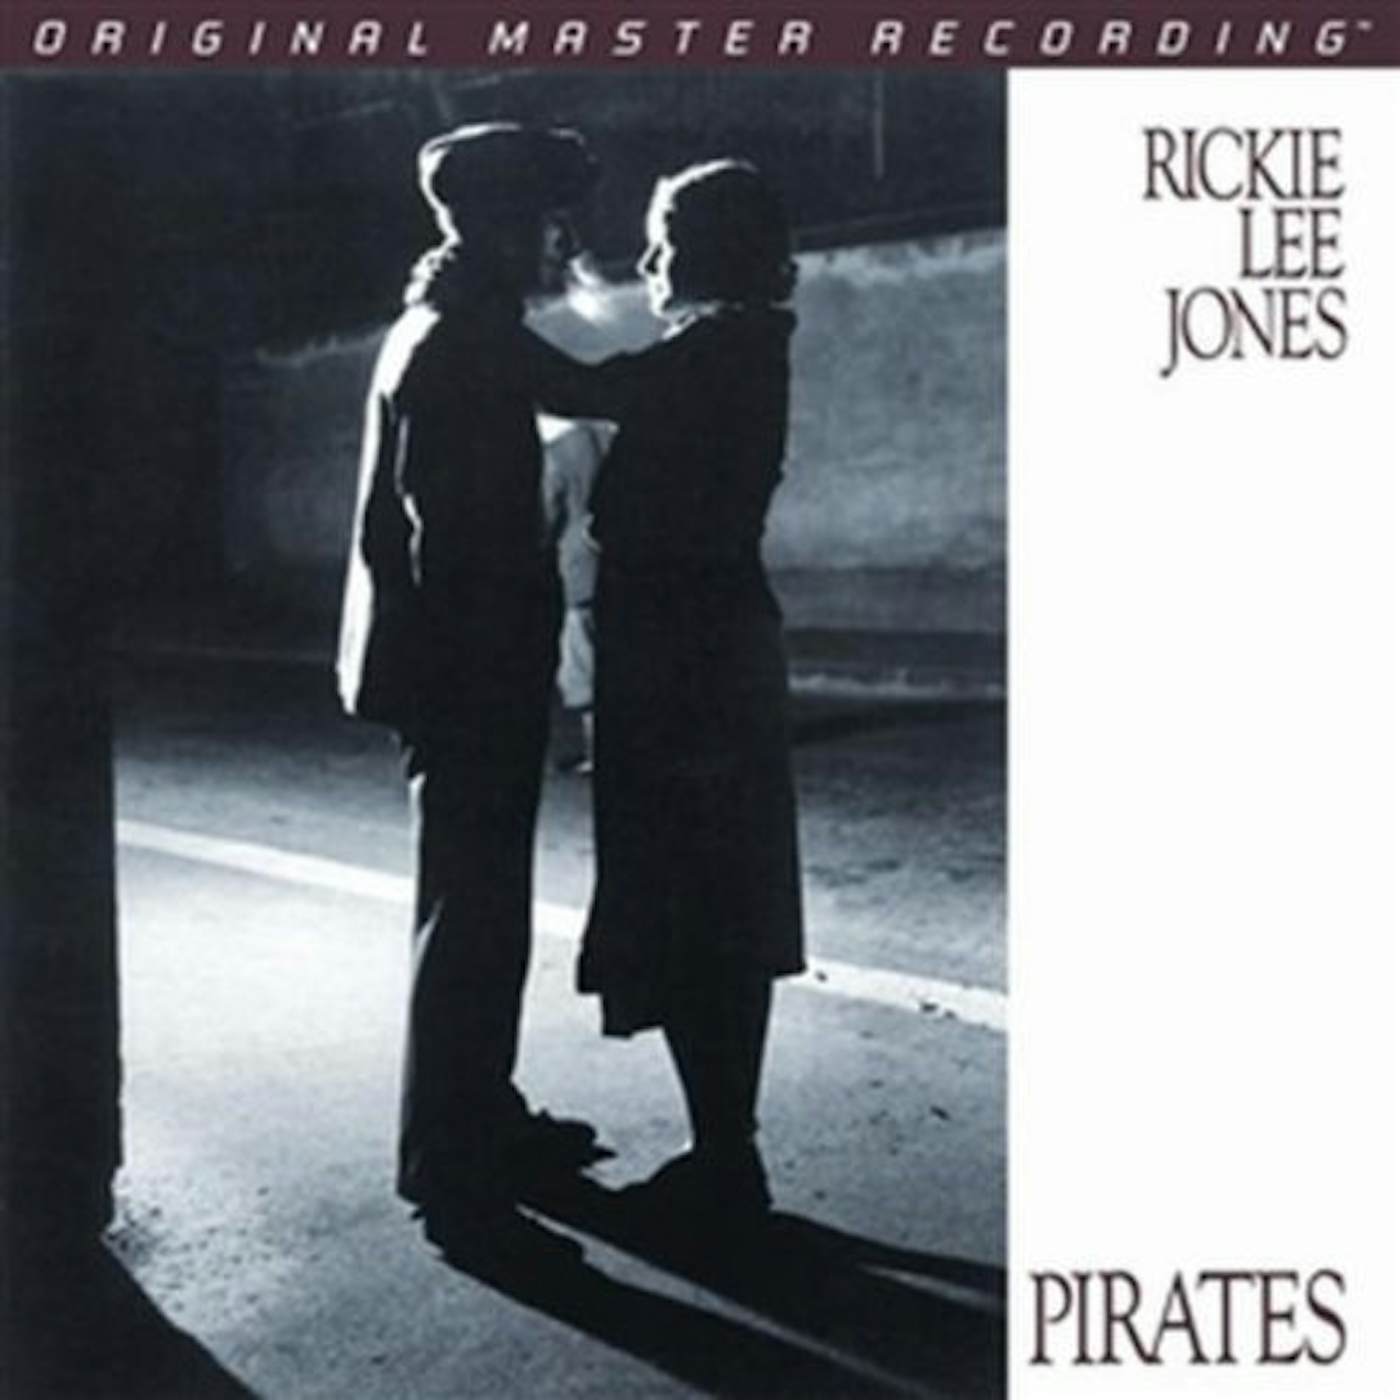 Rickie Lee Jones Pirates Vinyl Record